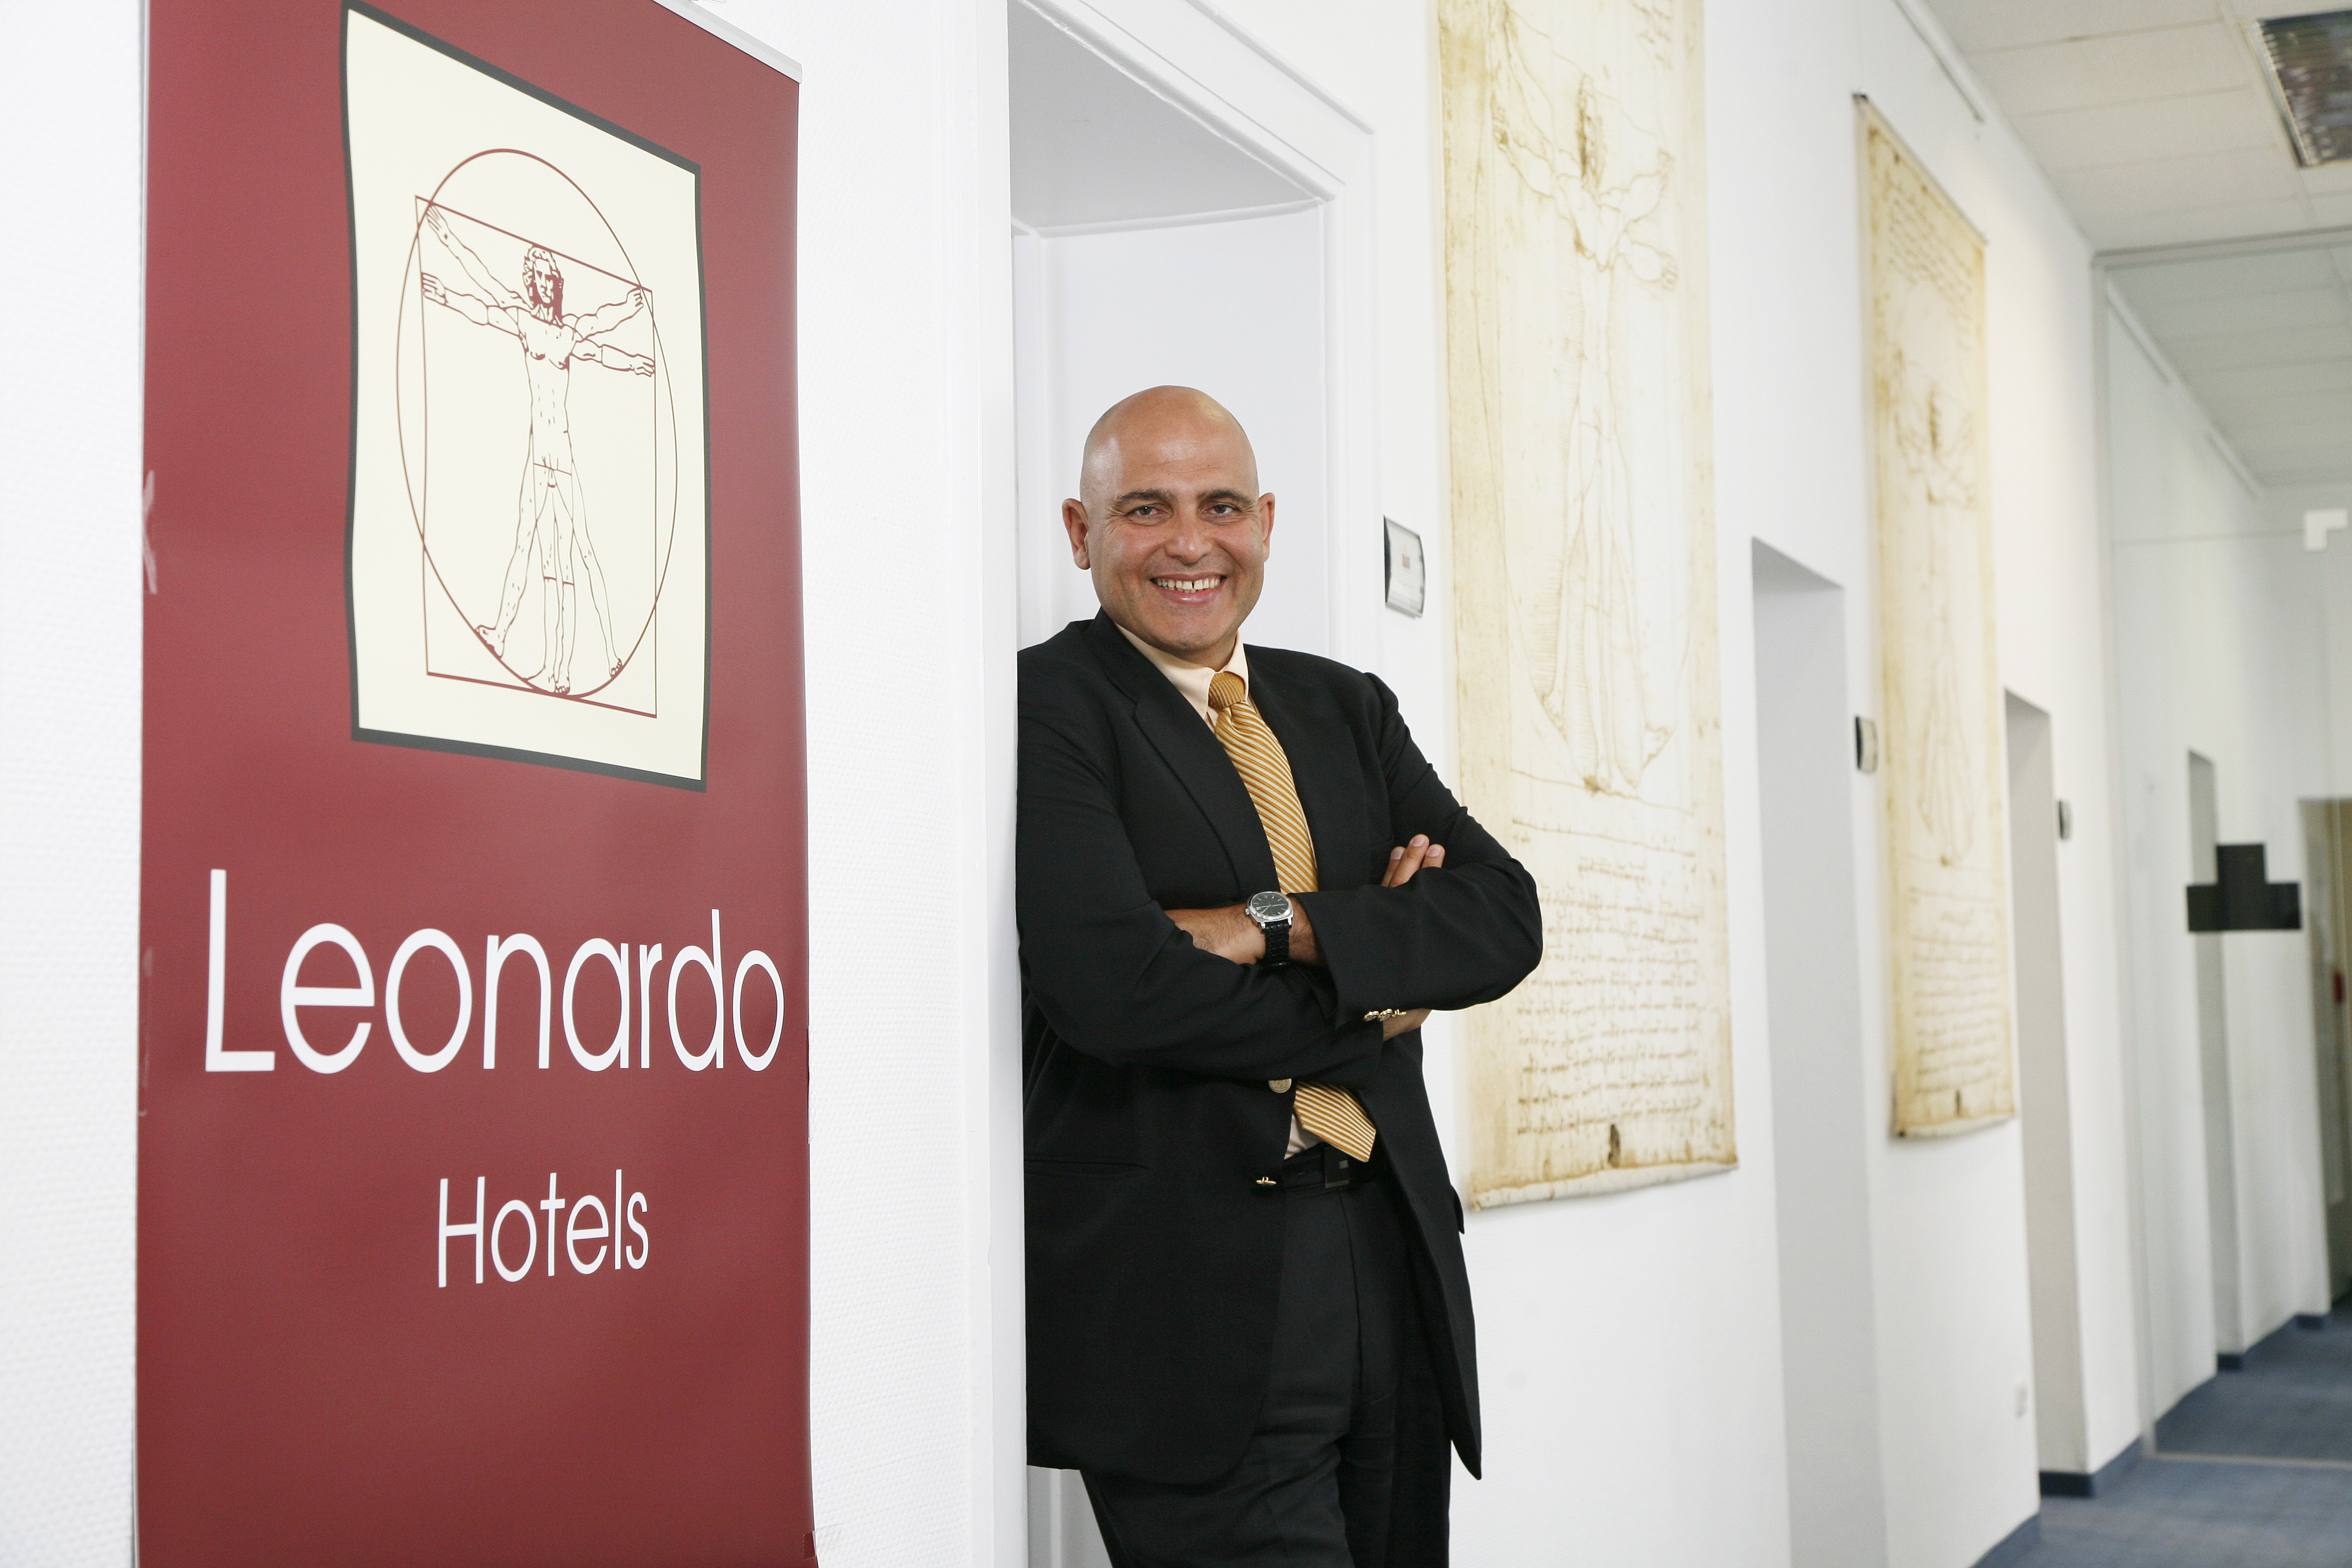 David Fattal, fondatore e CEO di Fattal Hotels Group & Leonardo Hotels